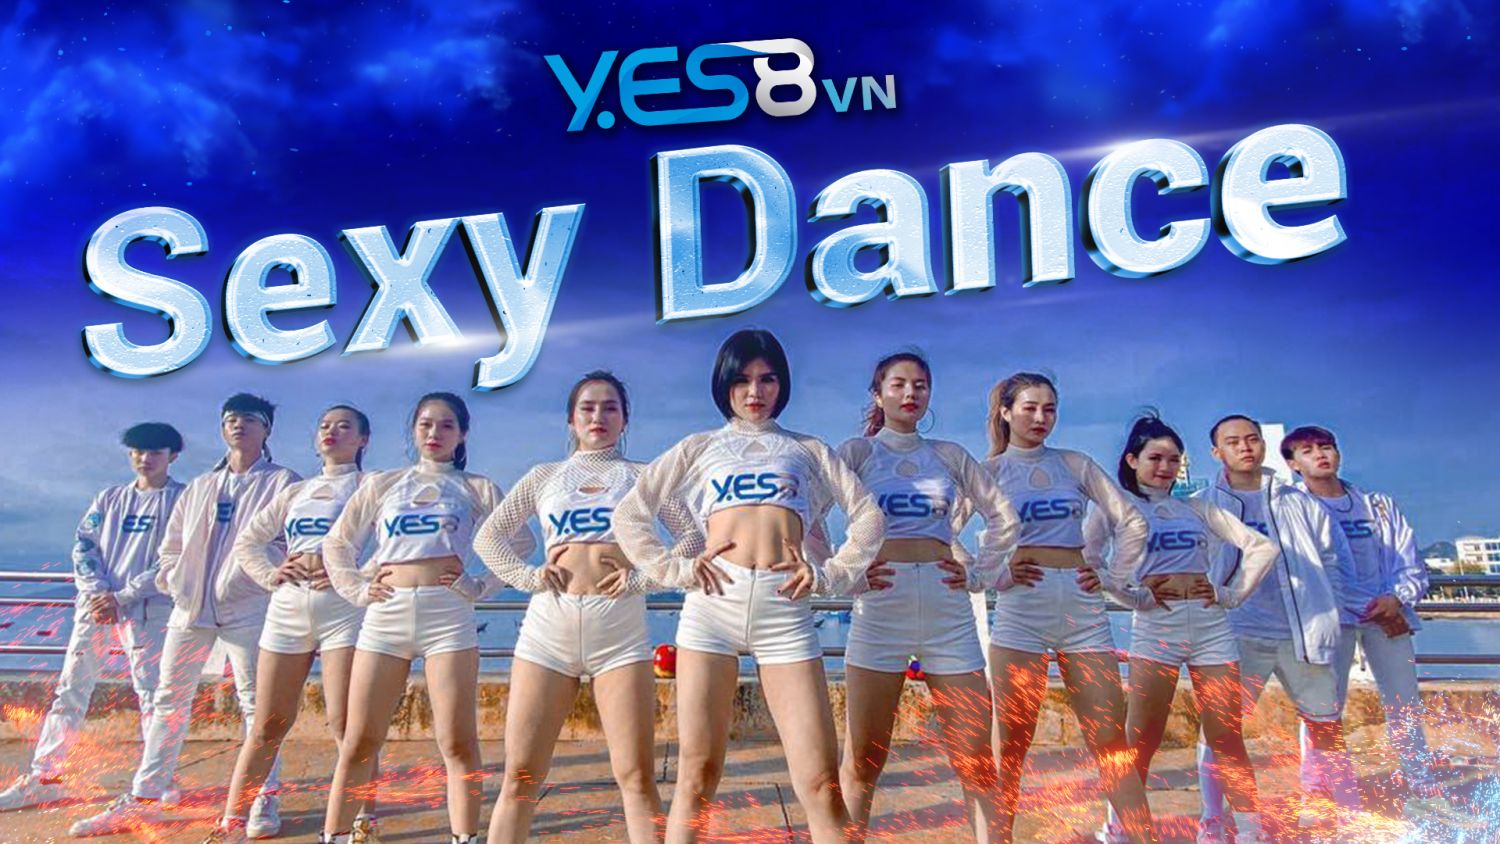 Đến ngay nhà cái cá cược Yes8 để đón xem MV sexy dance siêu hot này